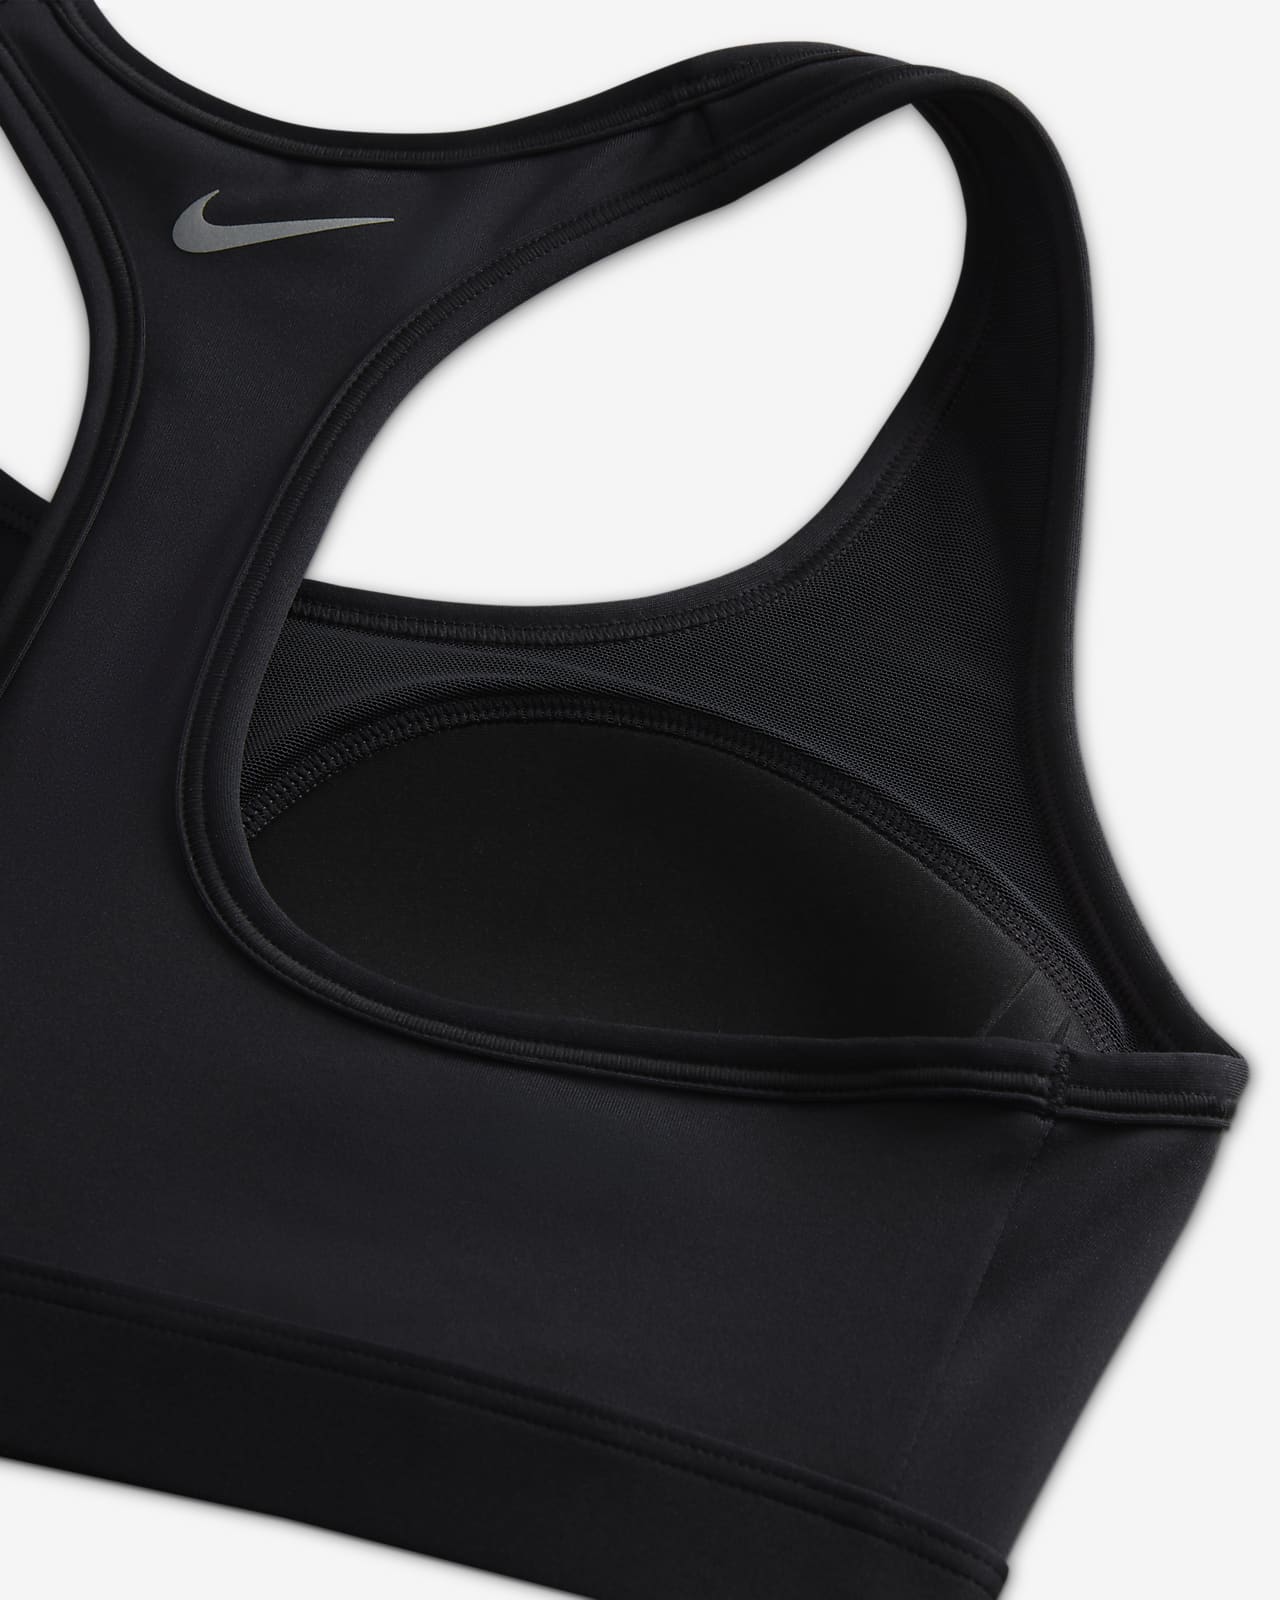 Brassière de sport rembourrée à motif Nike Swoosh Medium Support pour femme